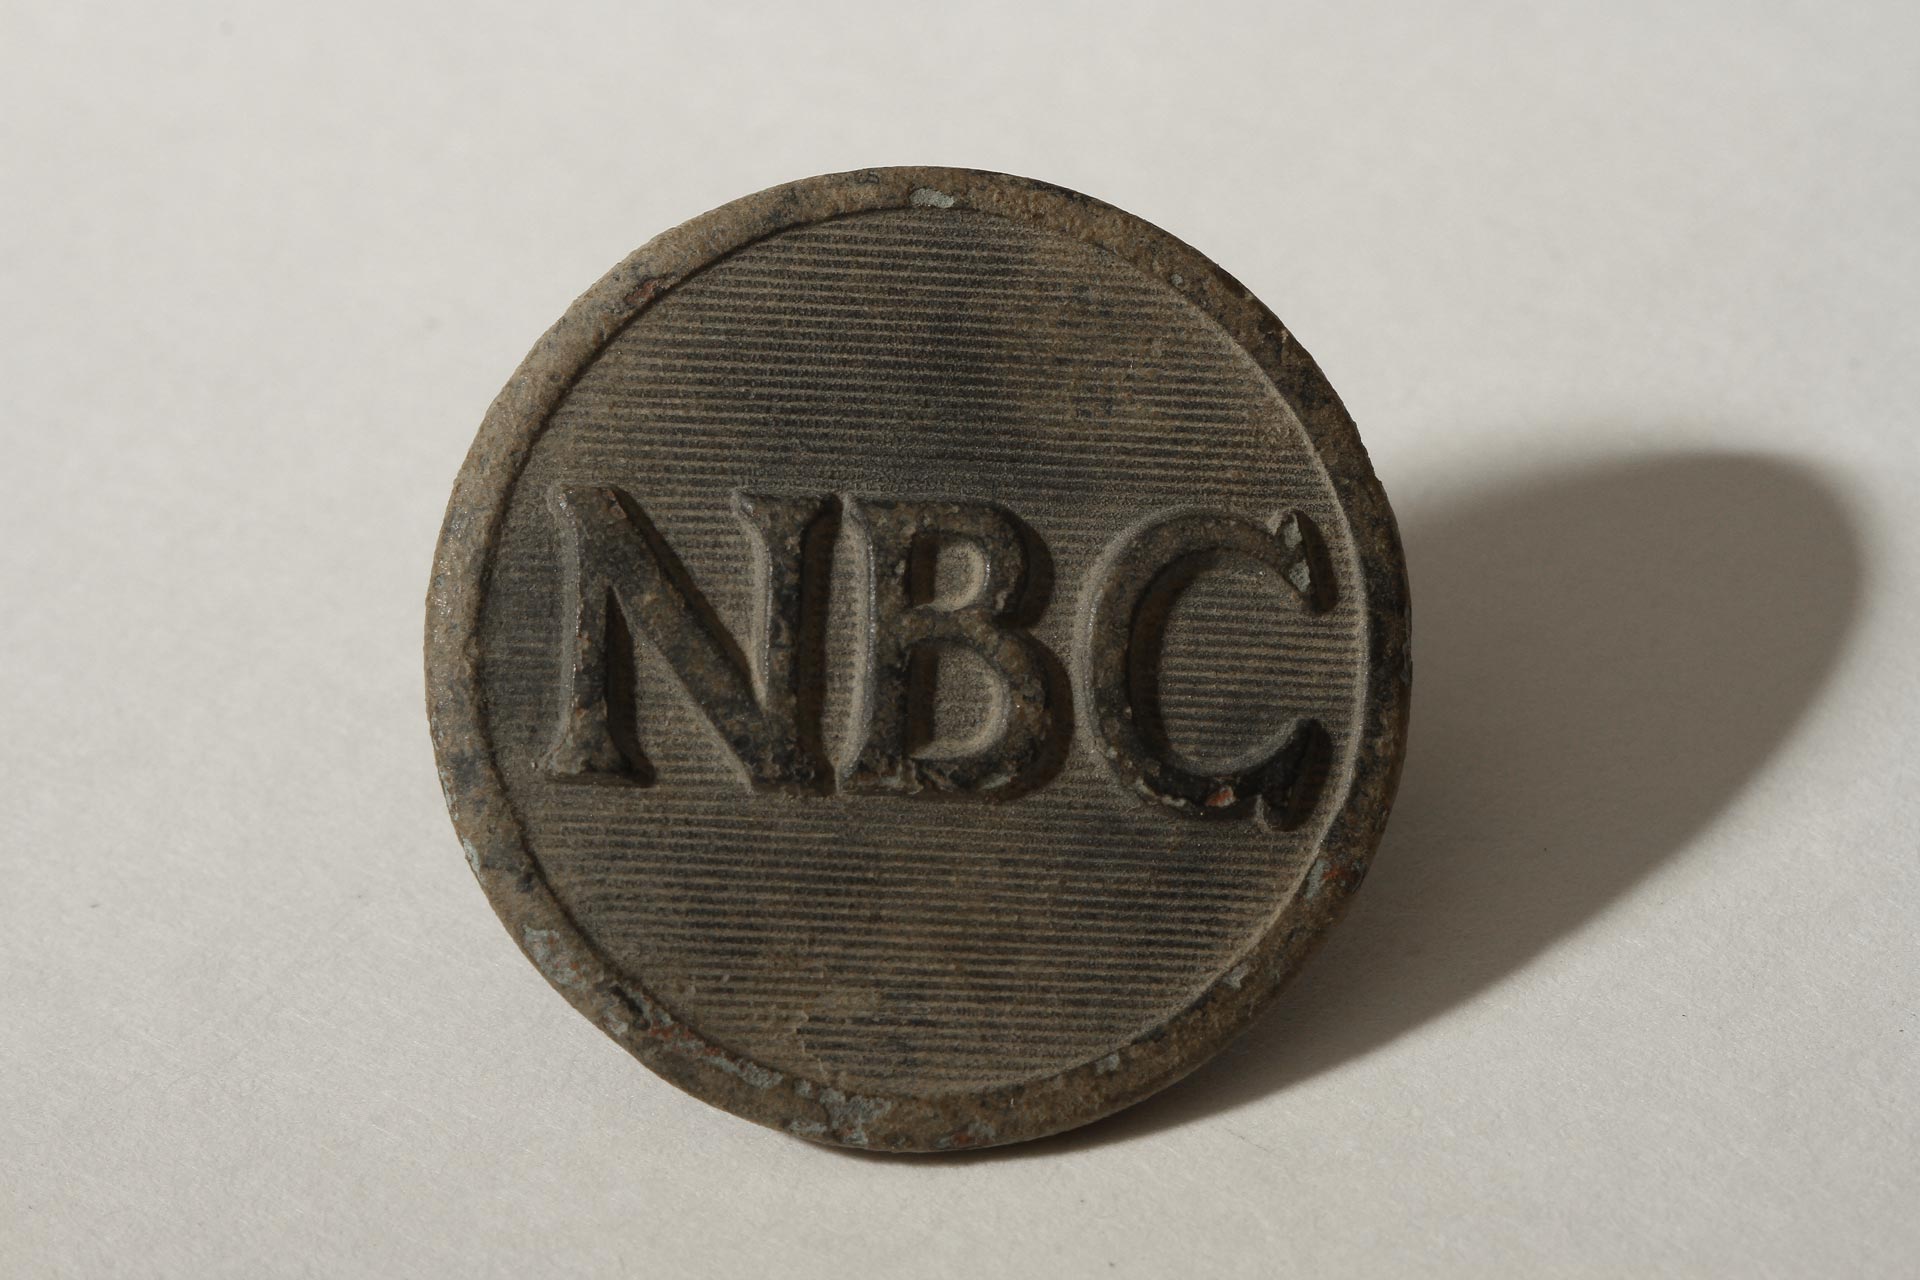 NBC Button front